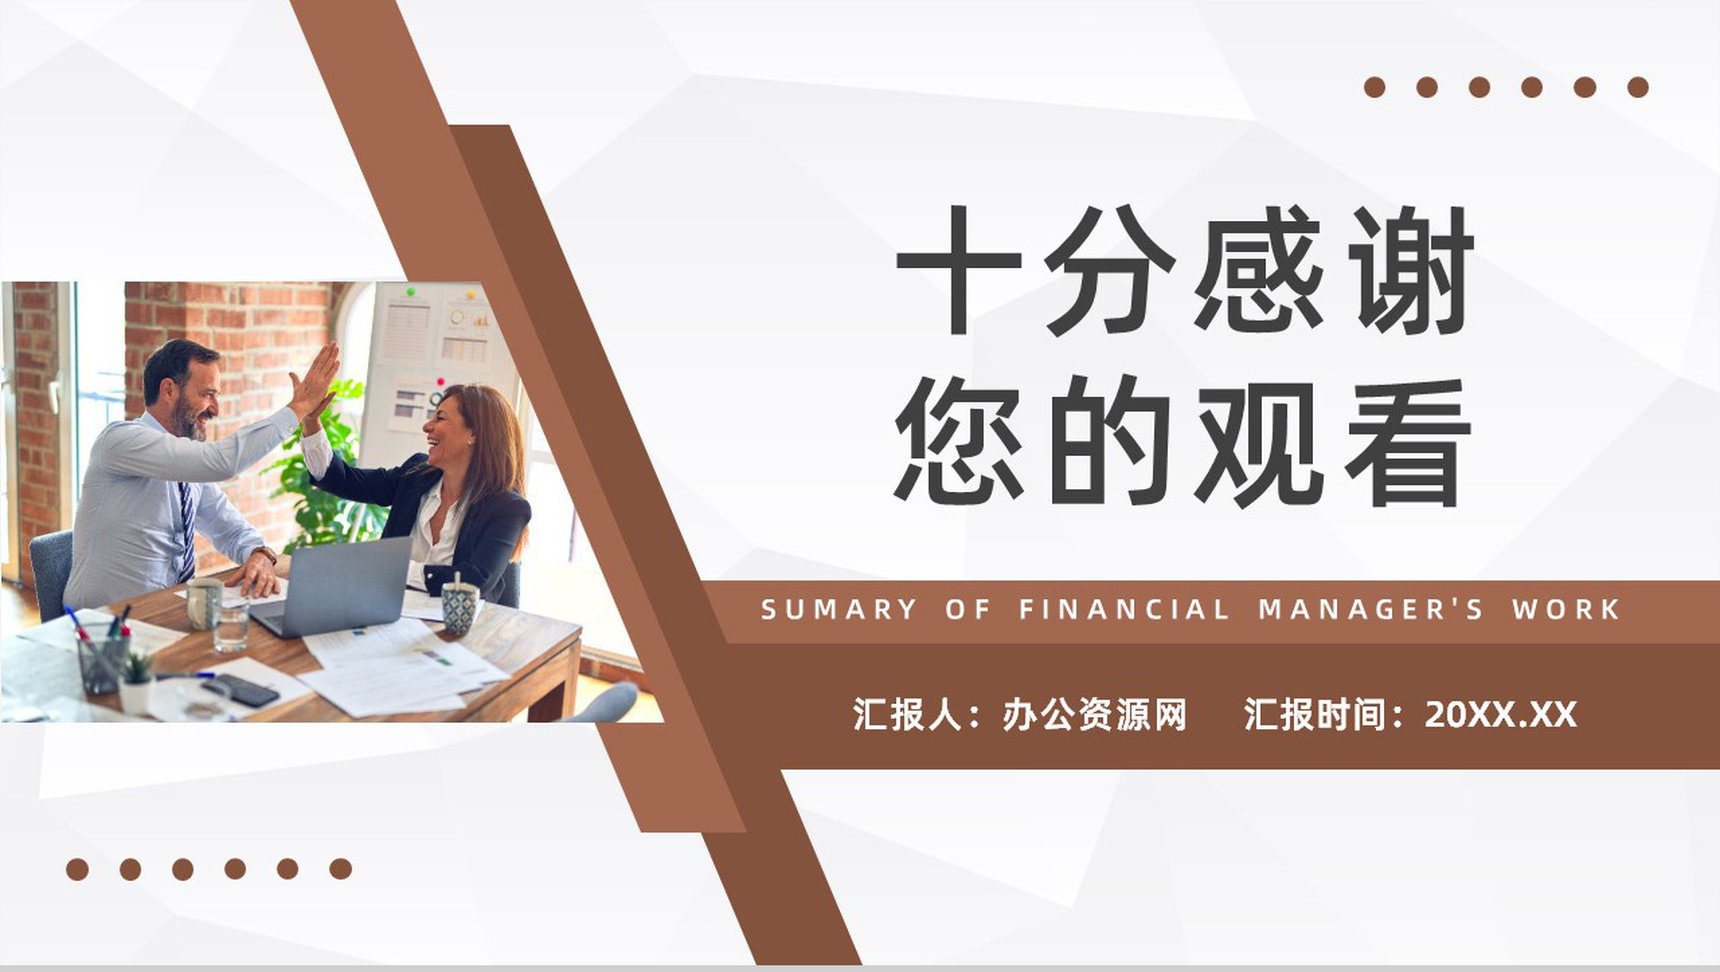 企业财务部门经理年中工作总结公司财务知识培训计划书通用PPT模板-11